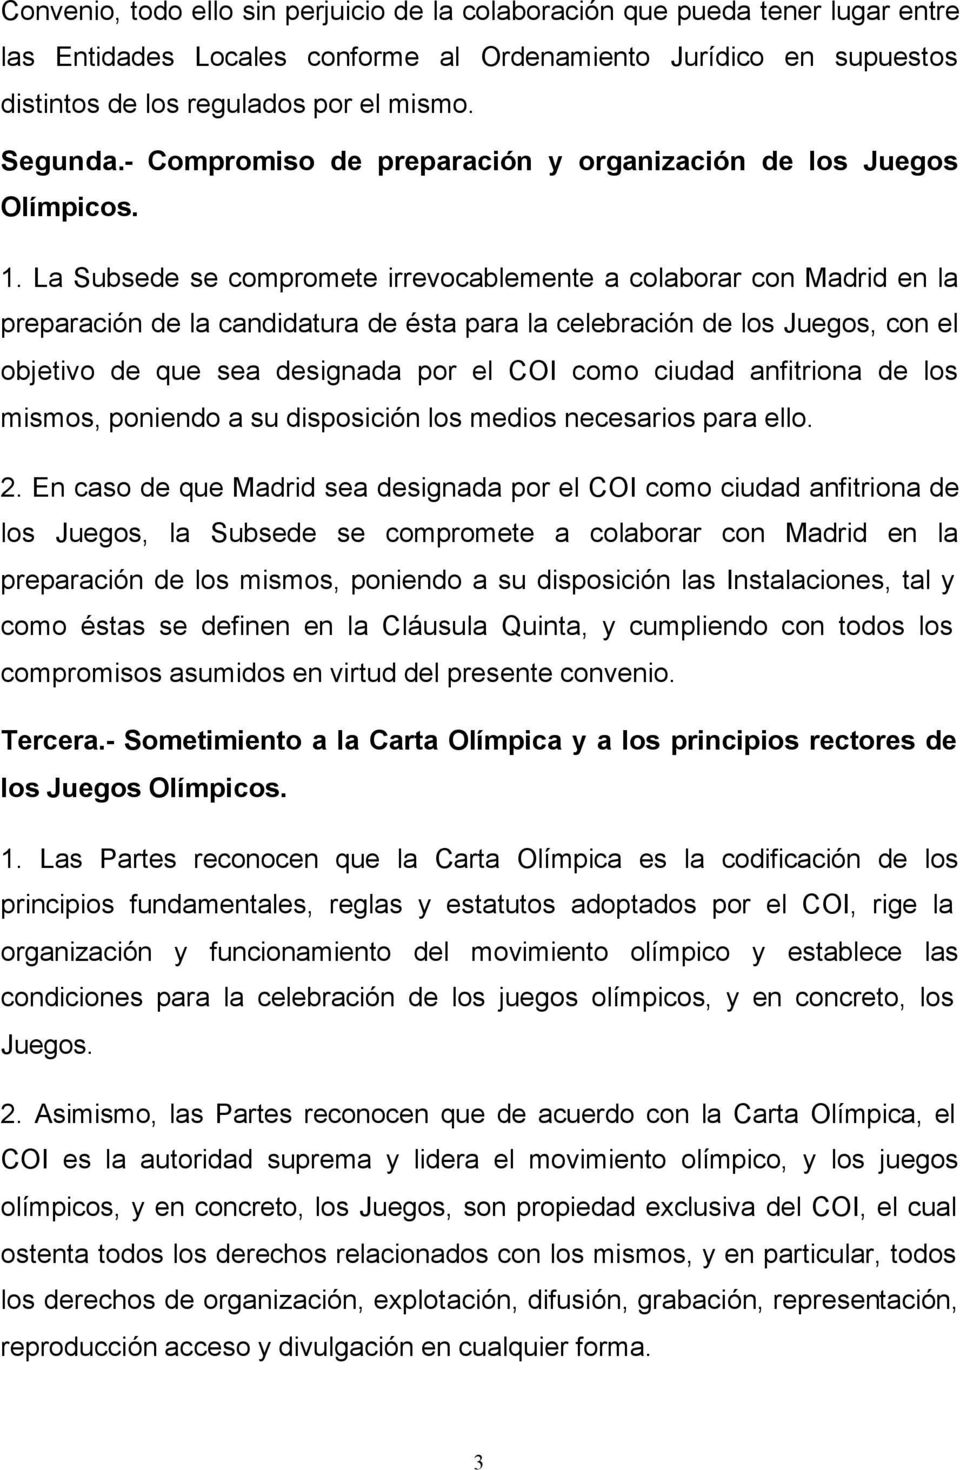 La Subsede se compromete irrevocablemente a colaborar con Madrid en la preparación de la candidatura de ésta para la celebración de los Juegos, con el objetivo de que sea designada por el COI como